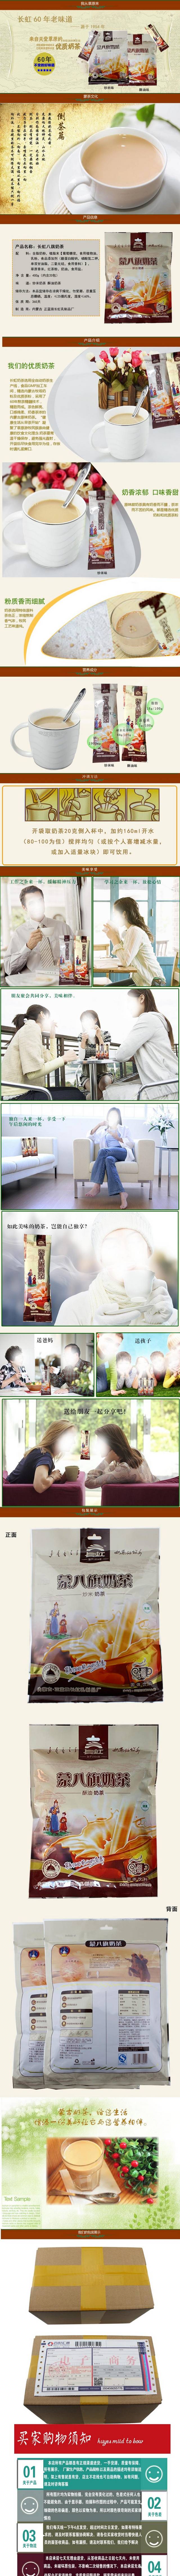 淘宝天猫广村珍珠奶茶薄和果味粉详情页